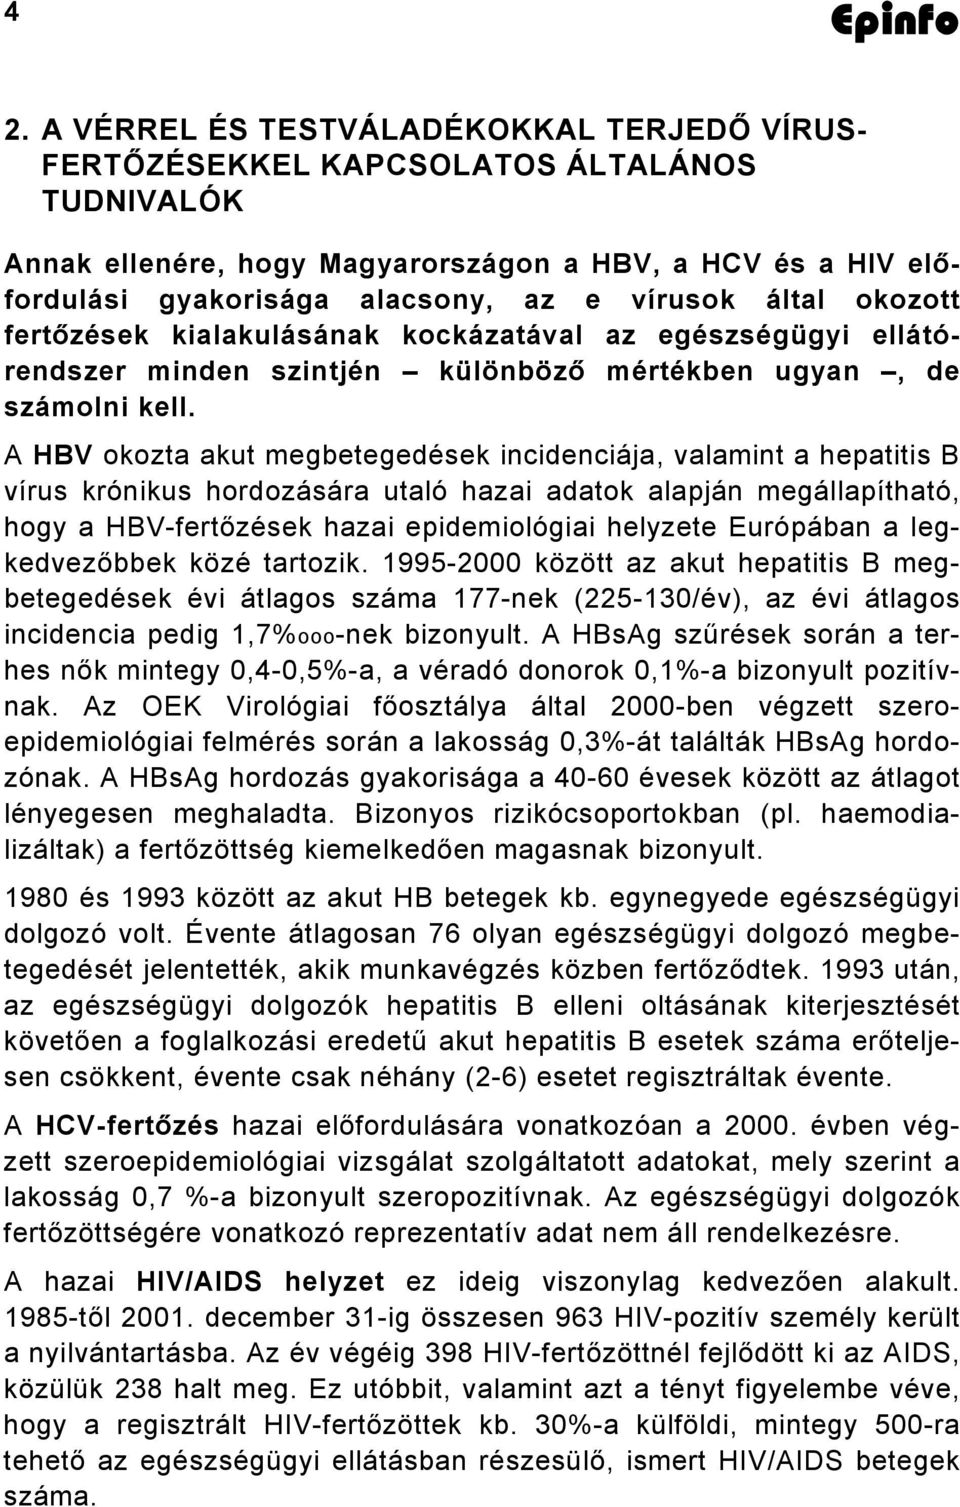 A HBV okozta akut megbetegedések incidenciája, valamint a hepatitis B vírus krónikus hordozására utaló hazai adatok alapján megállapítható, hogy a HBV-fertőzések hazai epidemiológiai helyzete